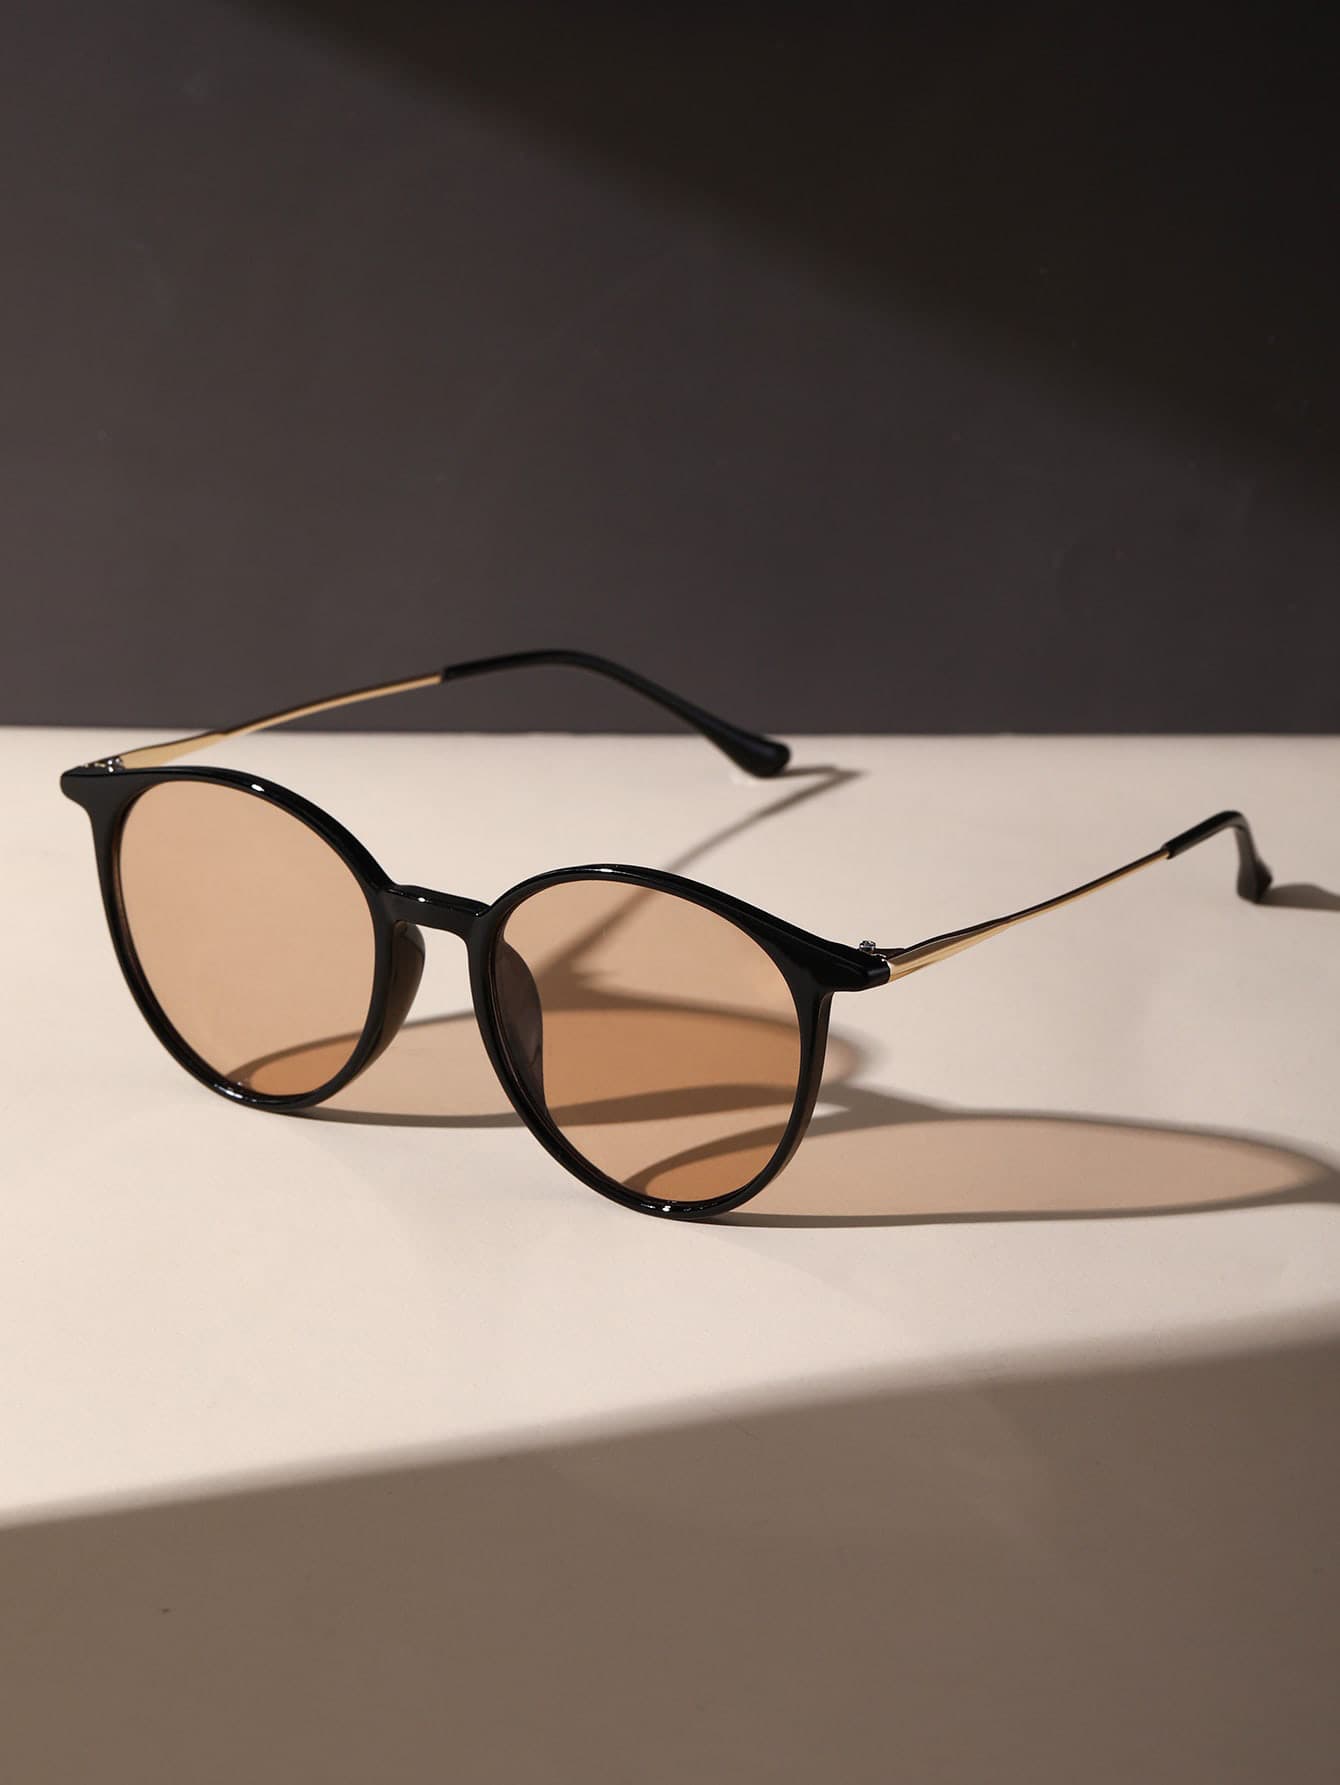 1 пара леопардовых тонированных линз в стиле бохо 2022 модные новые квадратные очки солнцезащитные очки винтажные мужские очки для вождения солнцезащитные очки с защитой от ультрафиолета